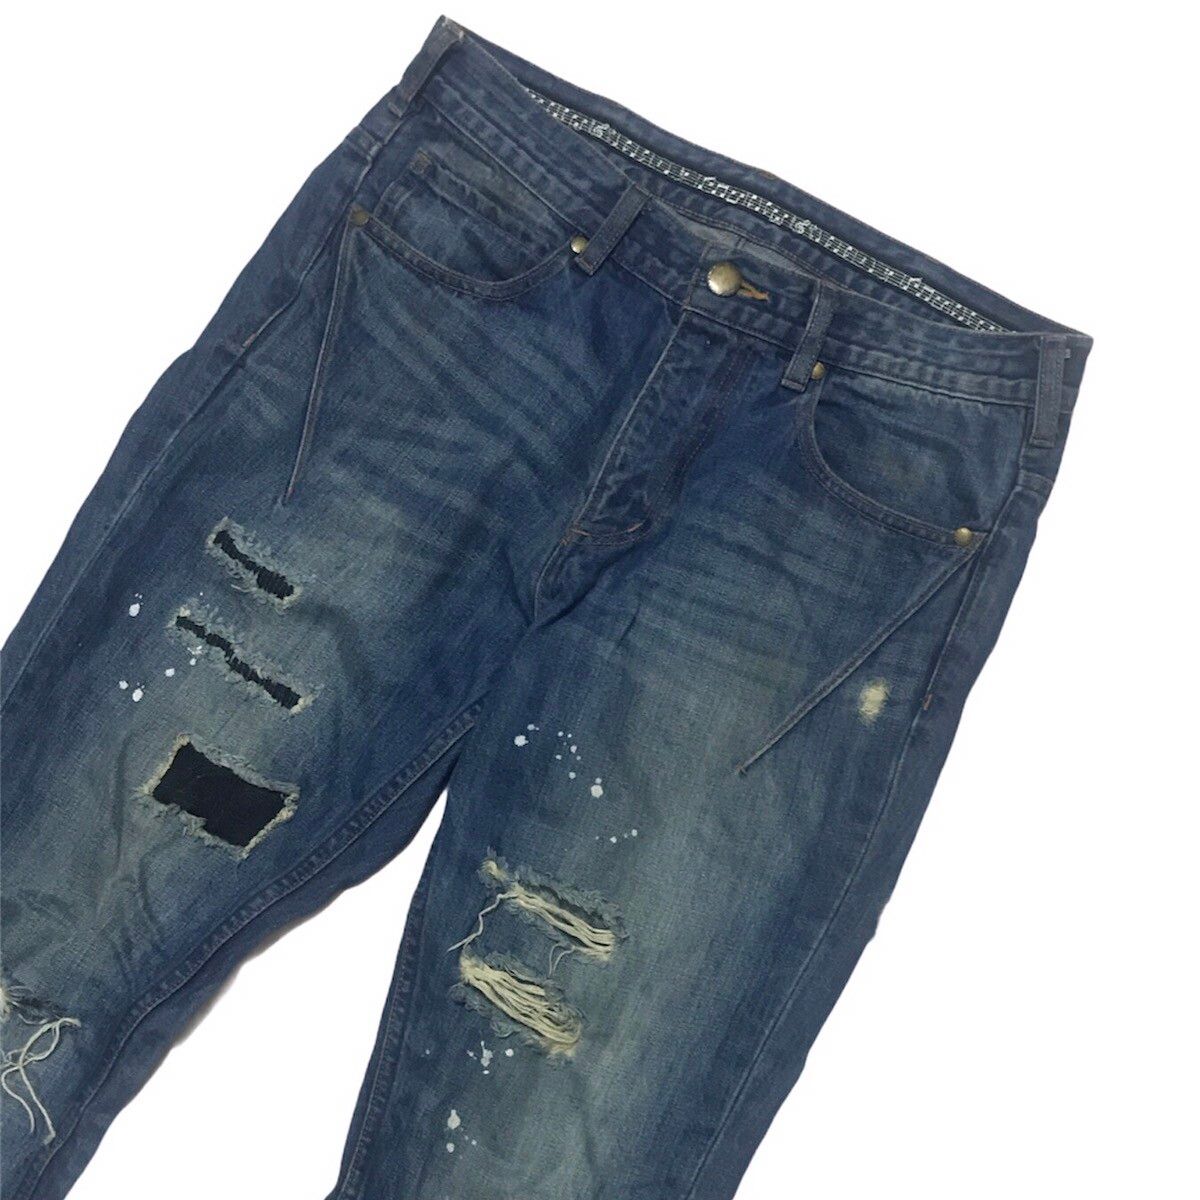 N(N) Number Nine Denim Distressed jeans - 2